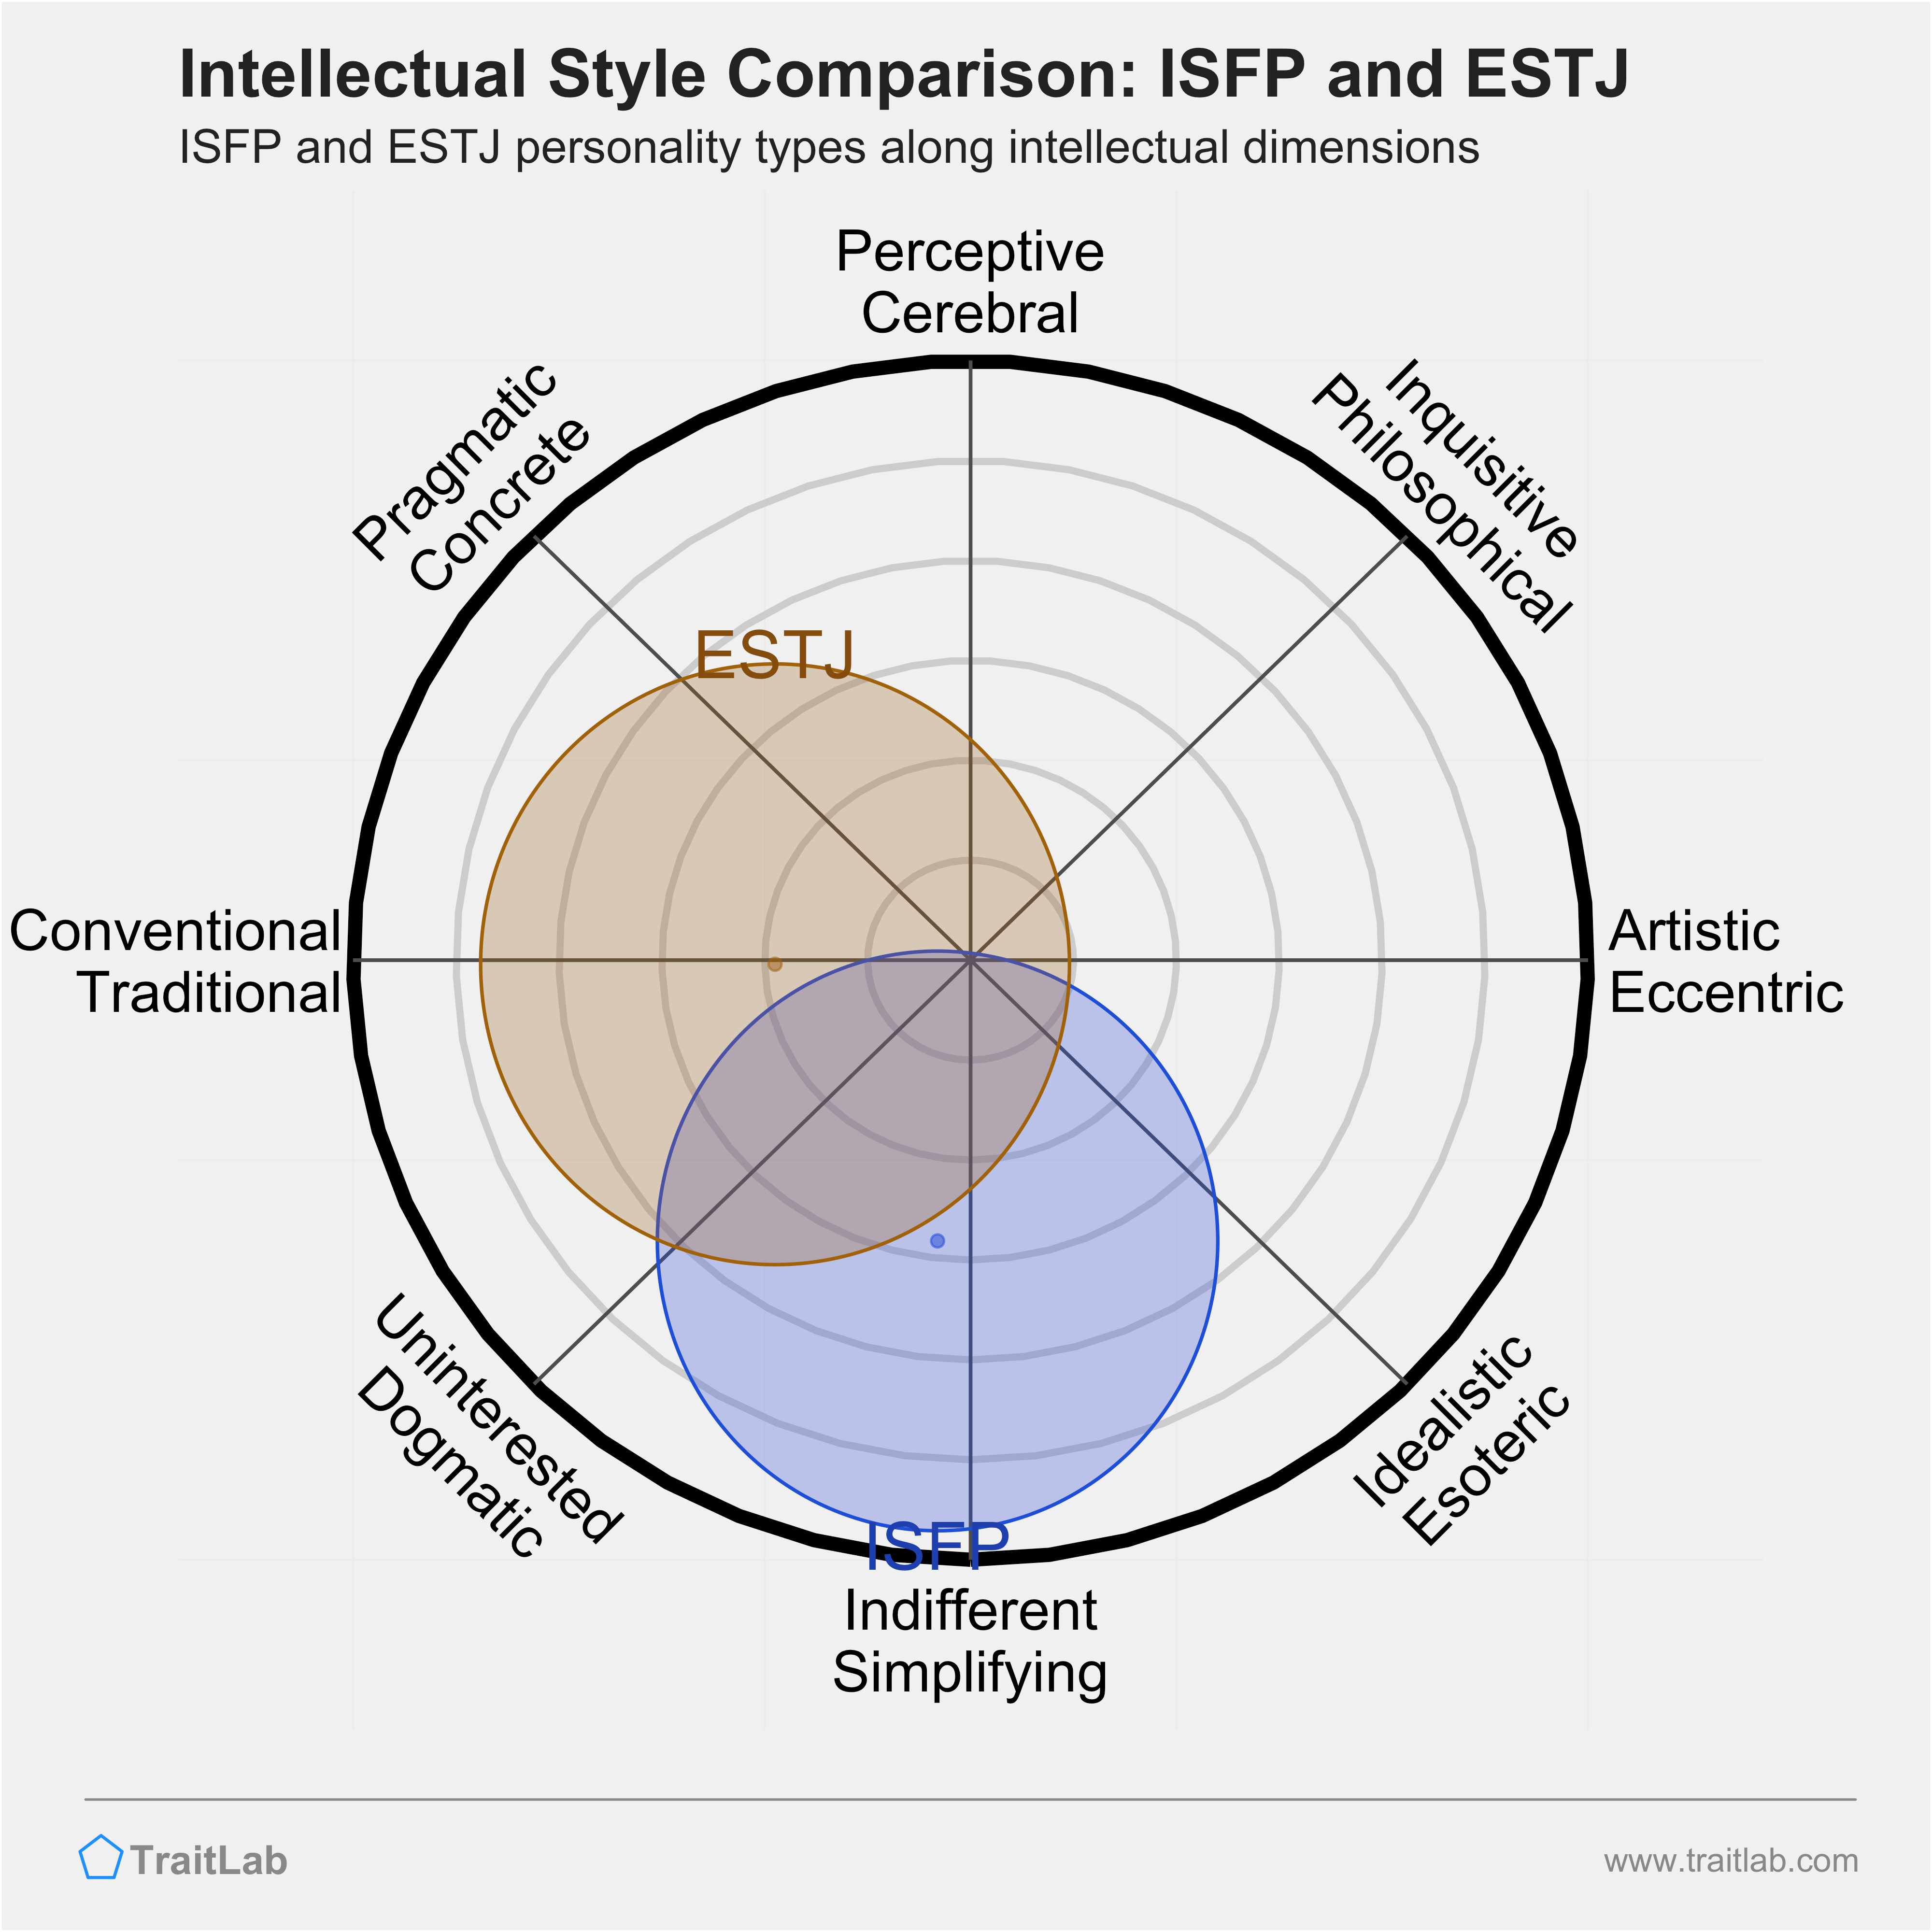 ISFP and ESTJ comparison across intellectual dimensions